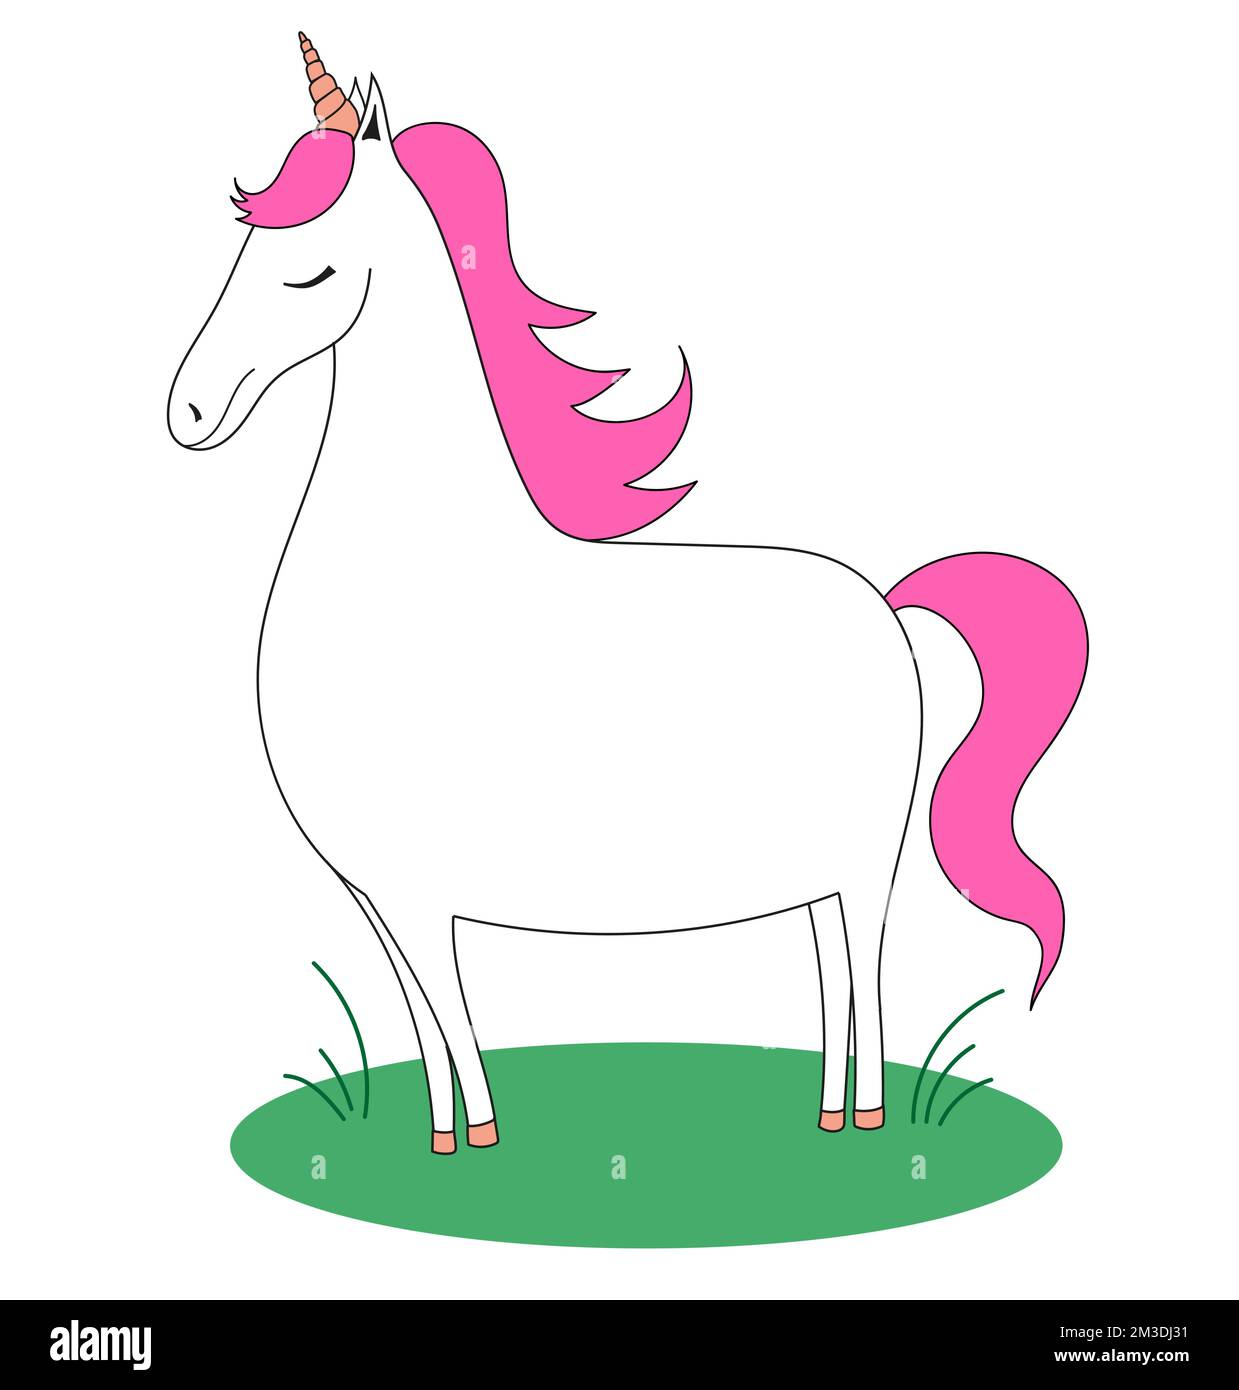 Unicorno con una criniera rosa sull'erba. Doodle cavallo. Illustrazione vettoriale semplice del capretto. Illustrazione Vettoriale